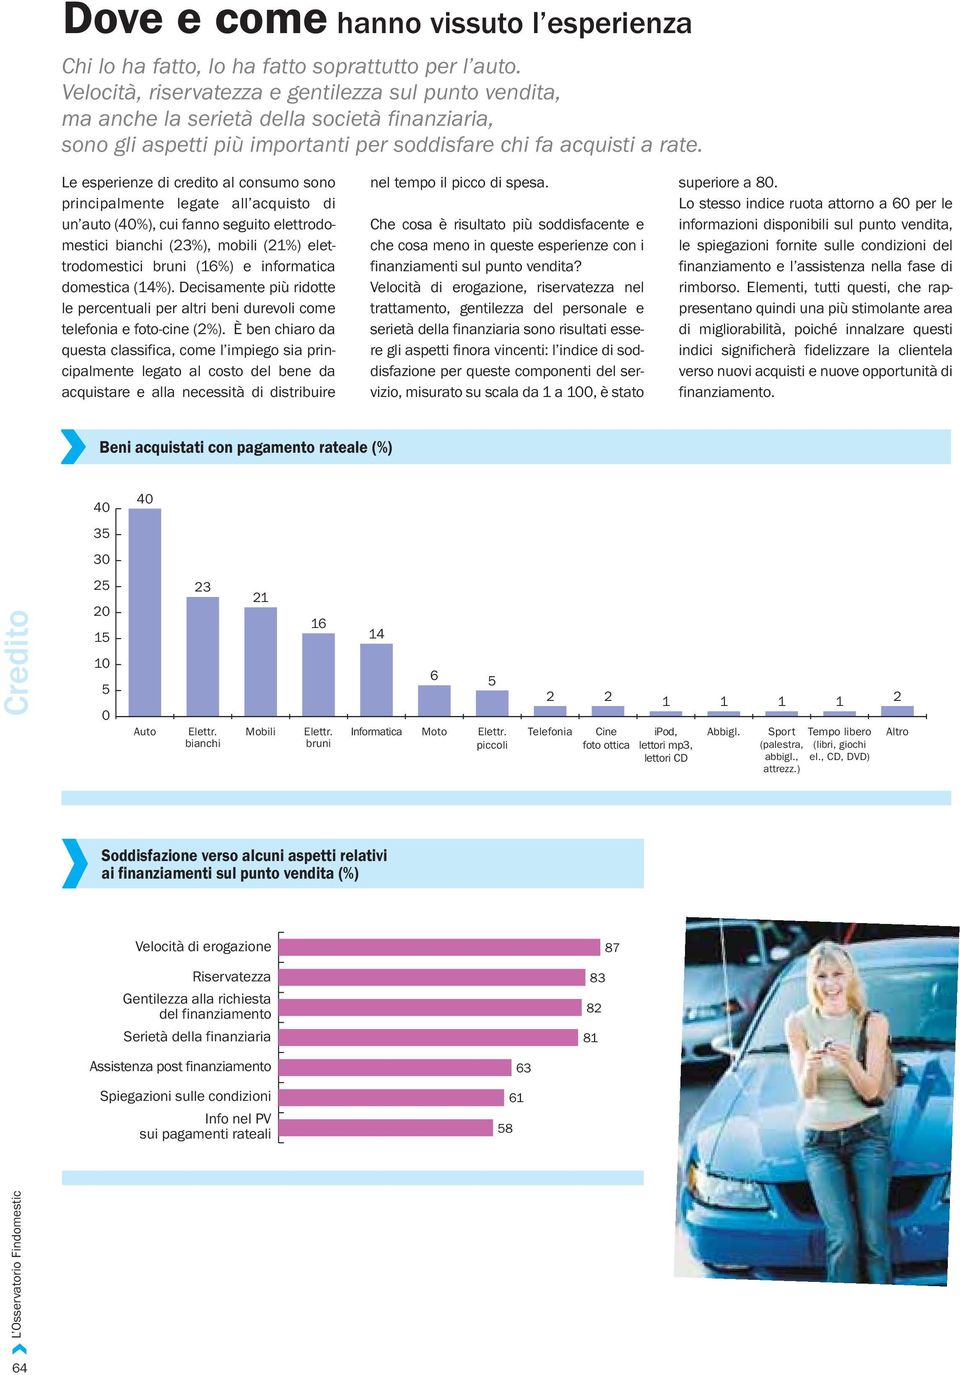 Le esperienze di credito al consumo sono principalmente legate all acquisto di un auto (0%), cui fanno seguito elettrodomestici bianchi (23%), mobili (21%) elettrodomestici bruni (16%) e informatica